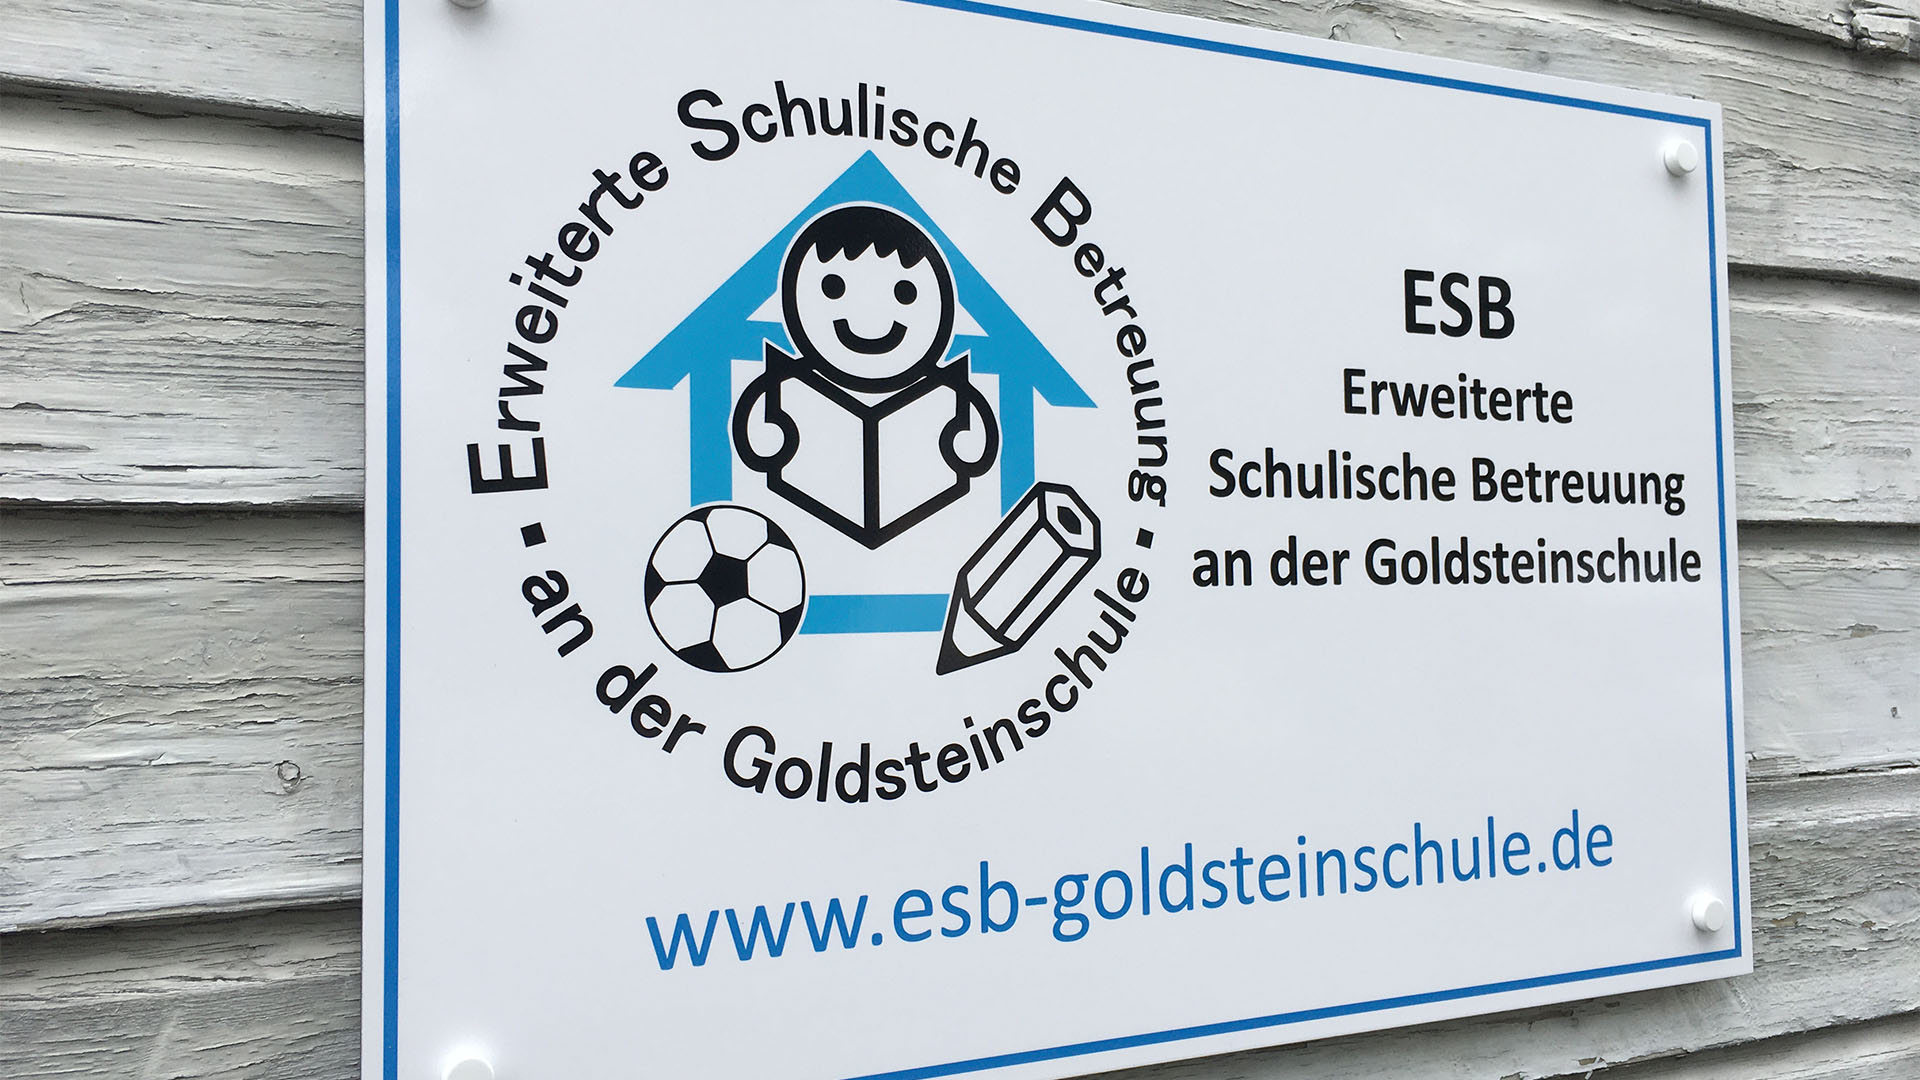 ESB-frankfurter-schilderfabrik-meides-2021